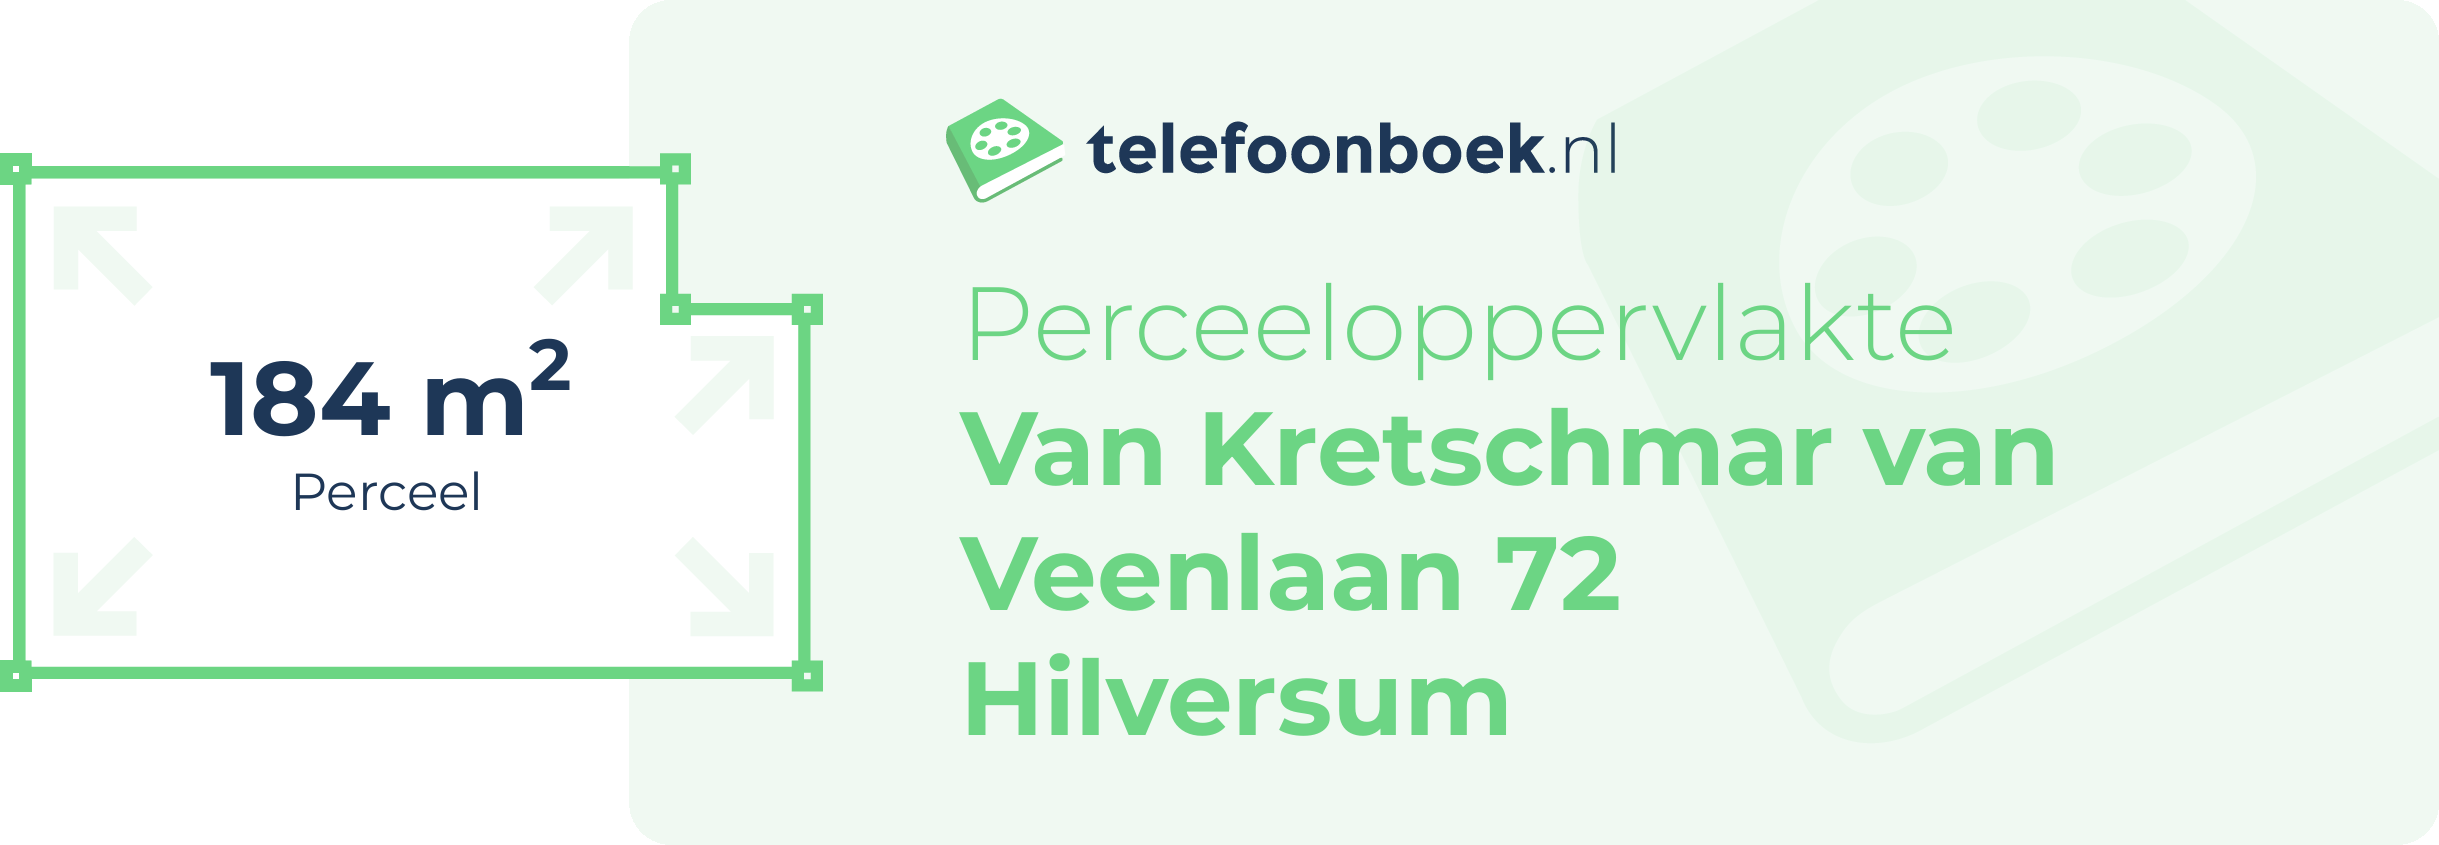 Perceeloppervlakte Van Kretschmar Van Veenlaan 72 Hilversum